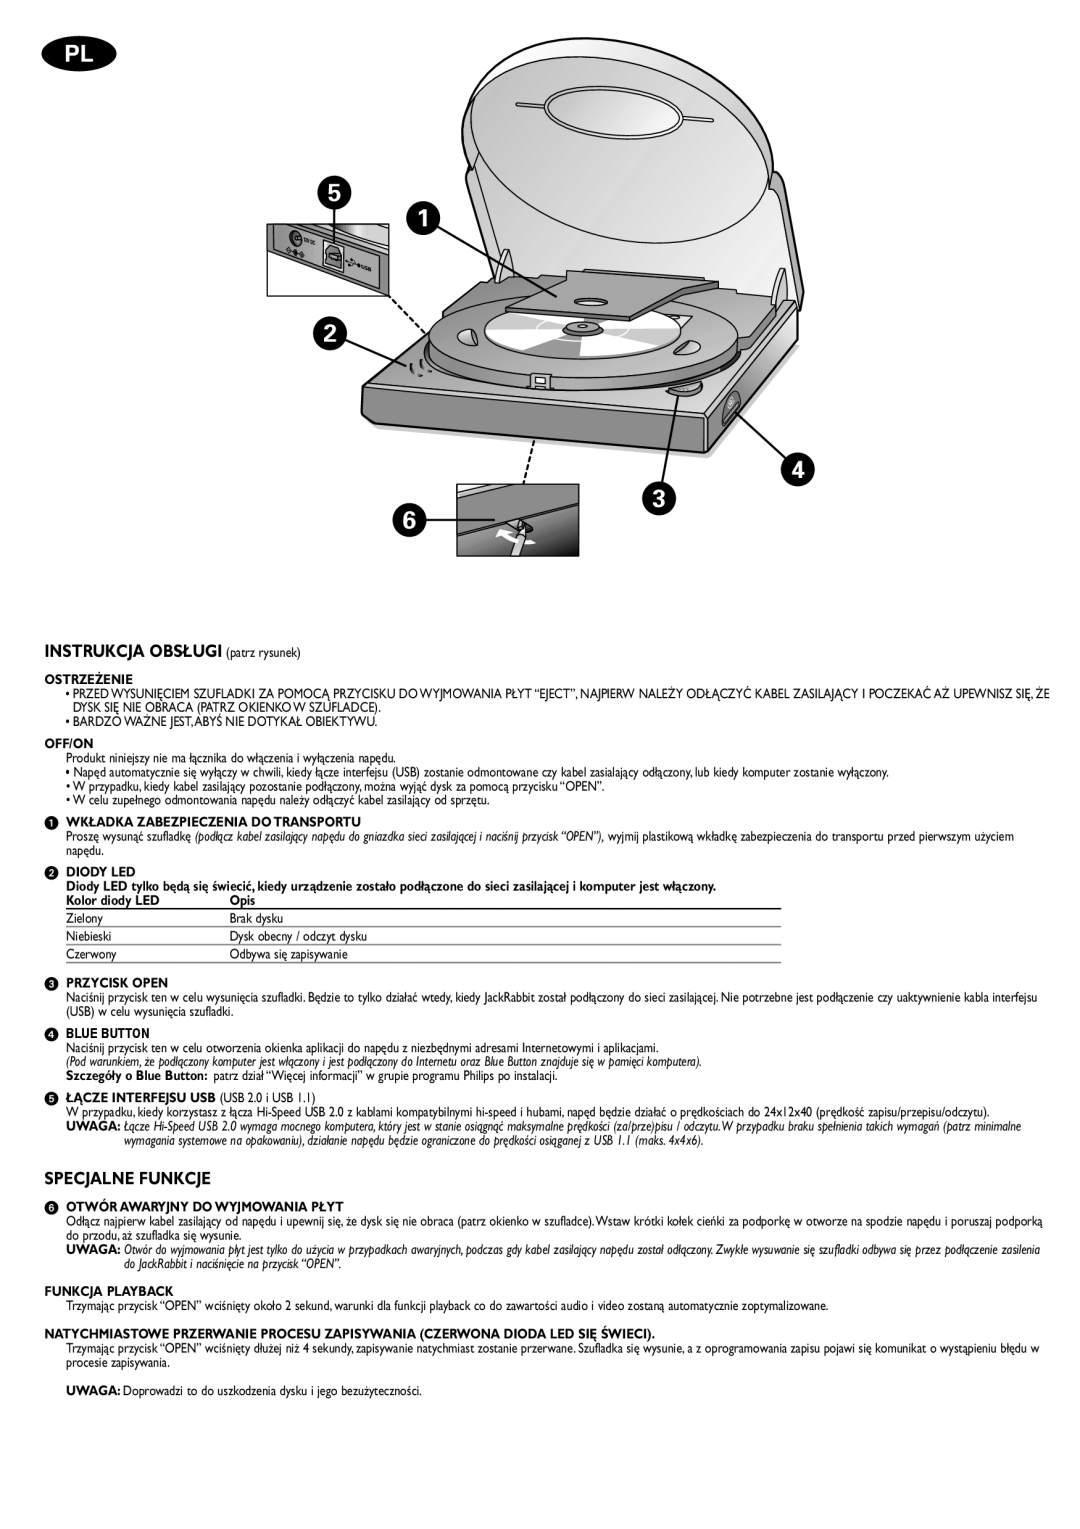 Philips JR24CDRW manual INSTRUKCJA OBSŁUGI patrz rysunek, Specjalne Funkcje 